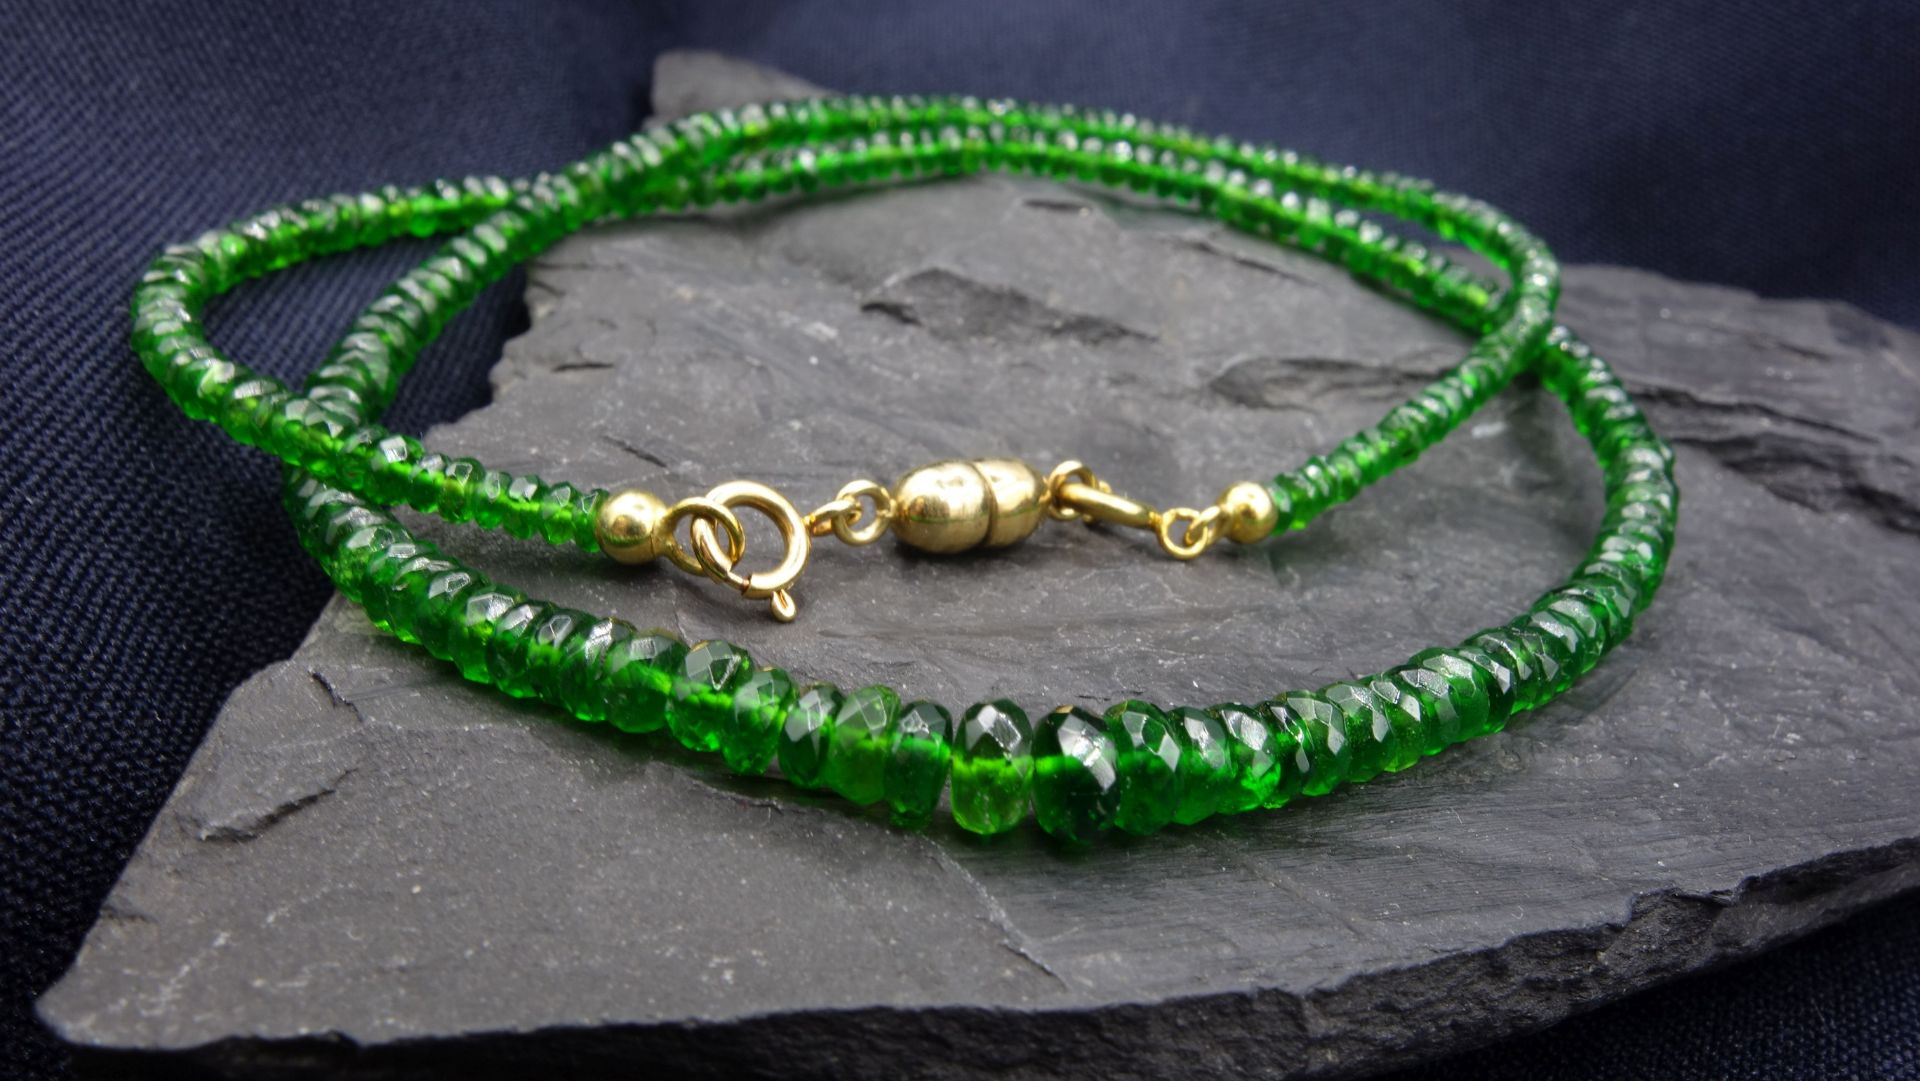 Gemstone necklace - Image 2 of 3